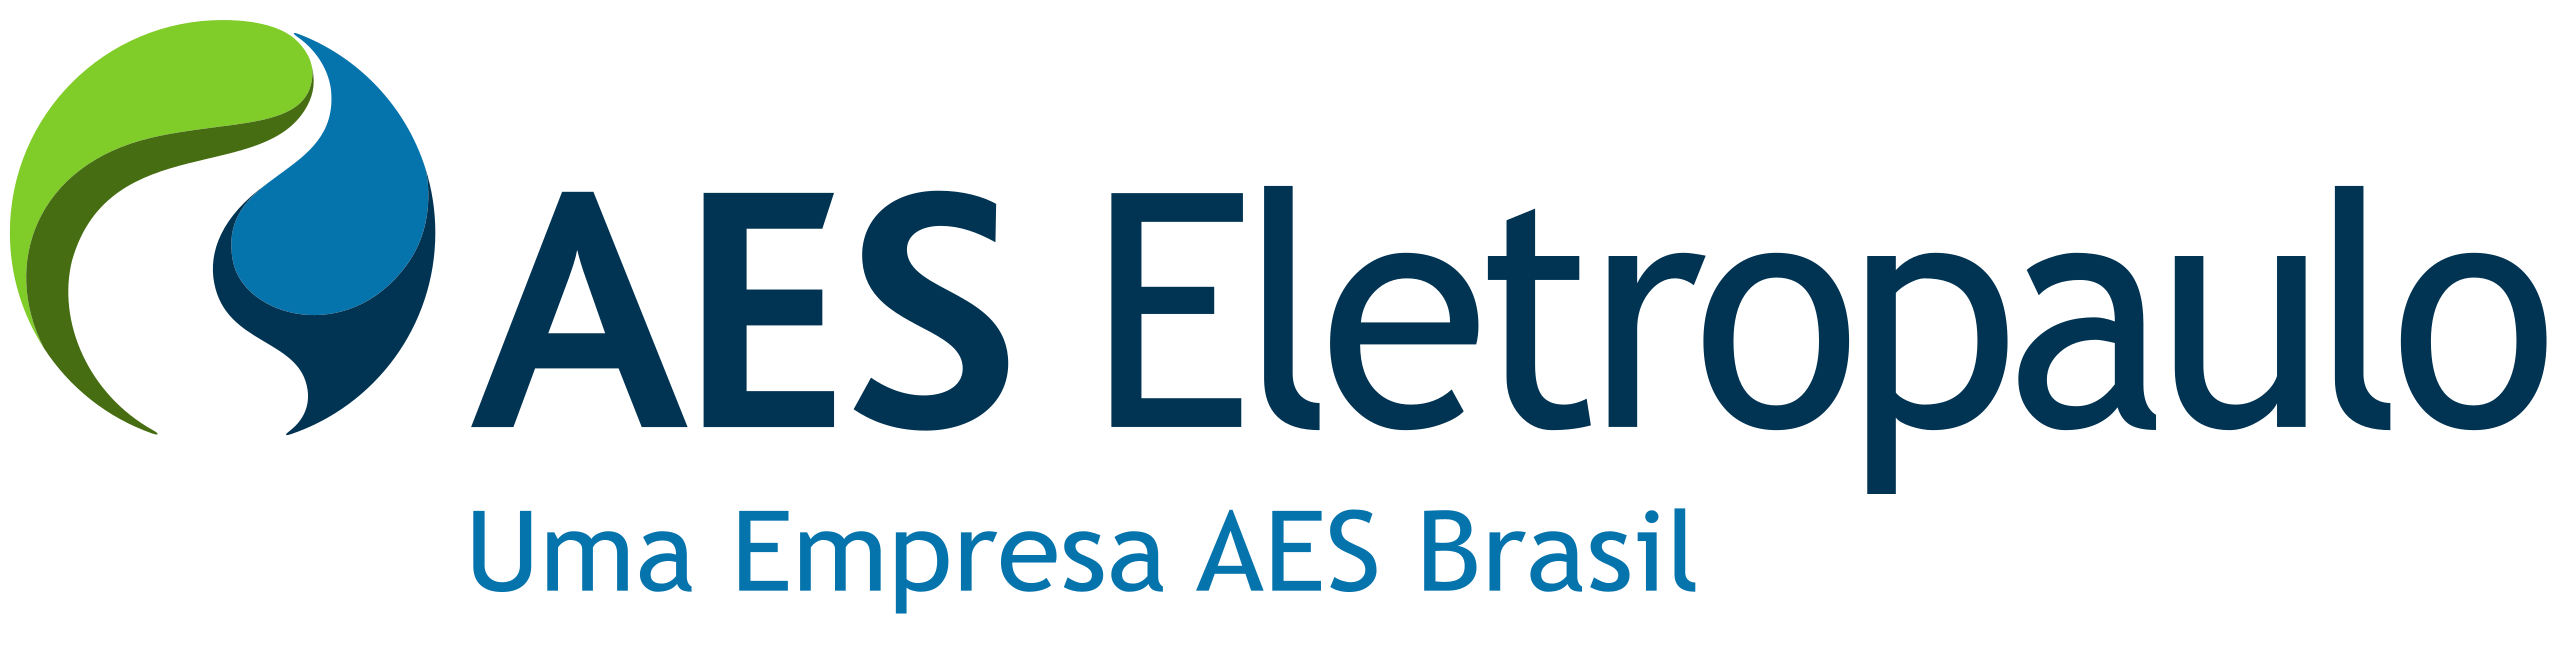 Enel Distribuição São Paulo, Logopedia